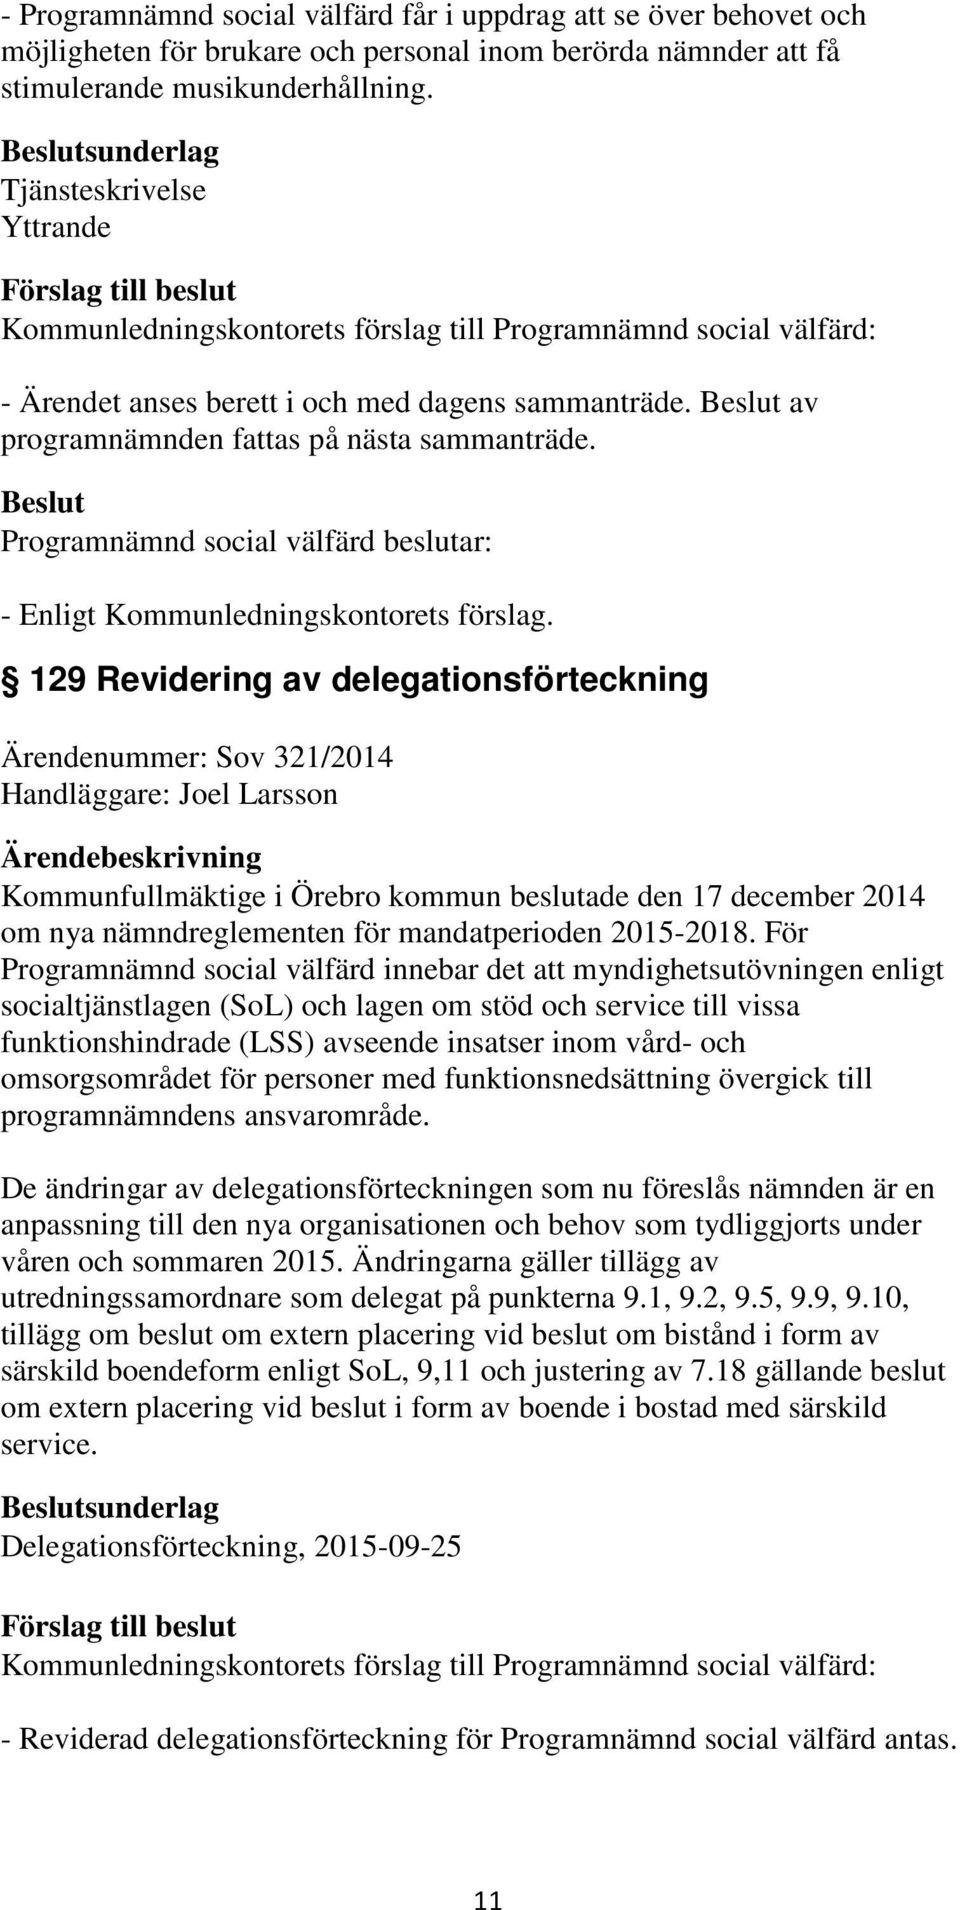 129 Revidering av delegationsförteckning Ärendenummer: Sov 321/2014 Handläggare: Joel Larsson Kommunfullmäktige i Örebro kommun beslutade den 17 december 2014 om nya nämndreglementen för